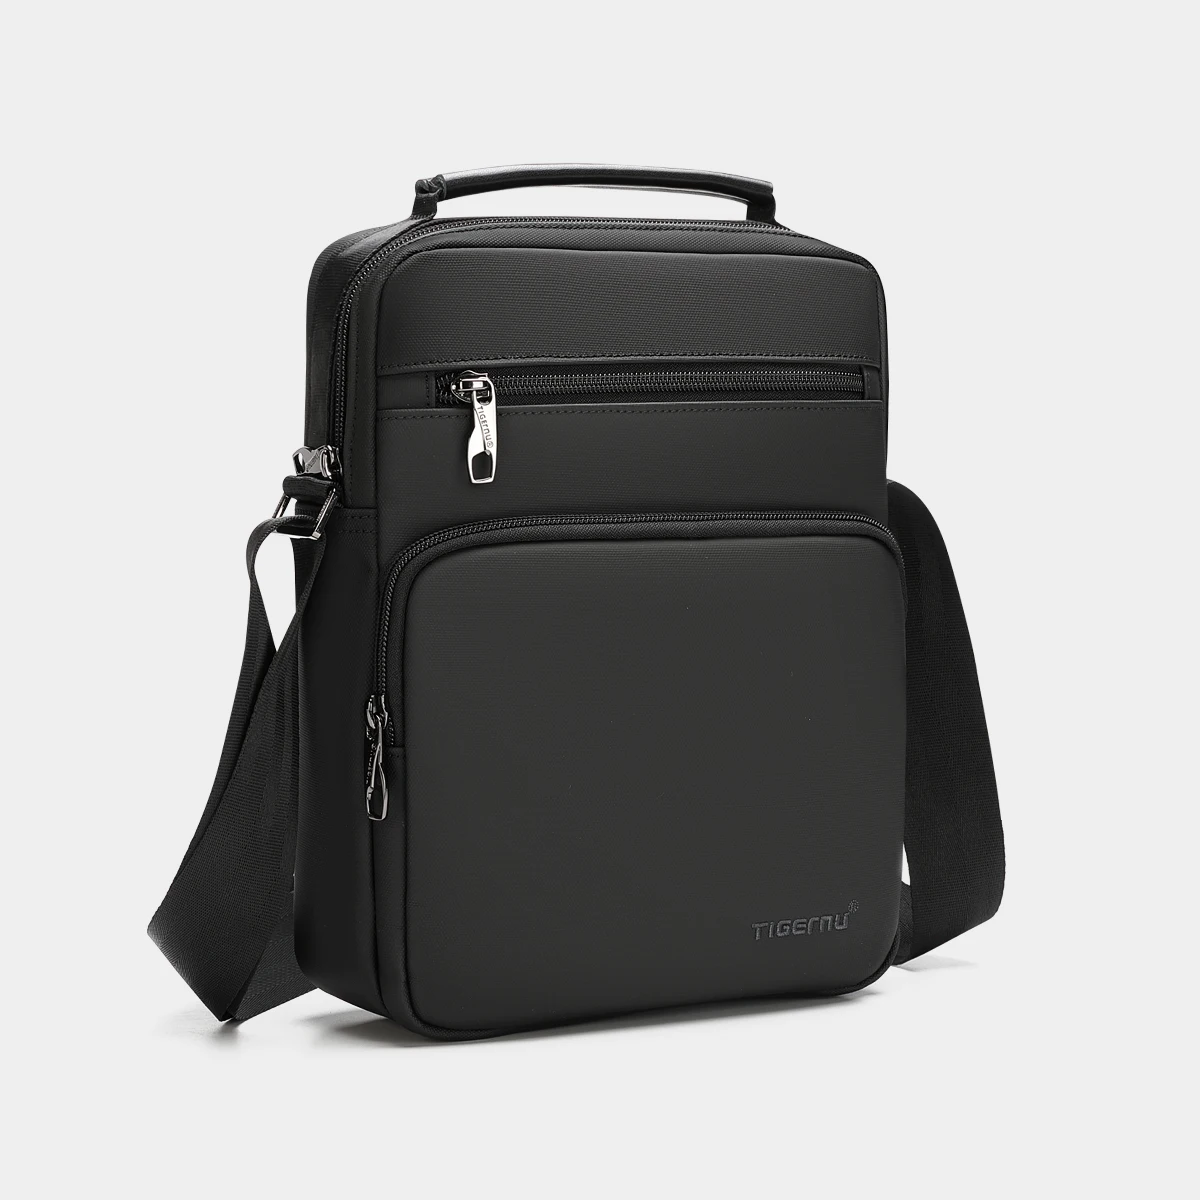 Lifetime Warranty Men Shoulder Bag 9.7 inch Ipad Bags Waterproof Lightwe... - $144.53